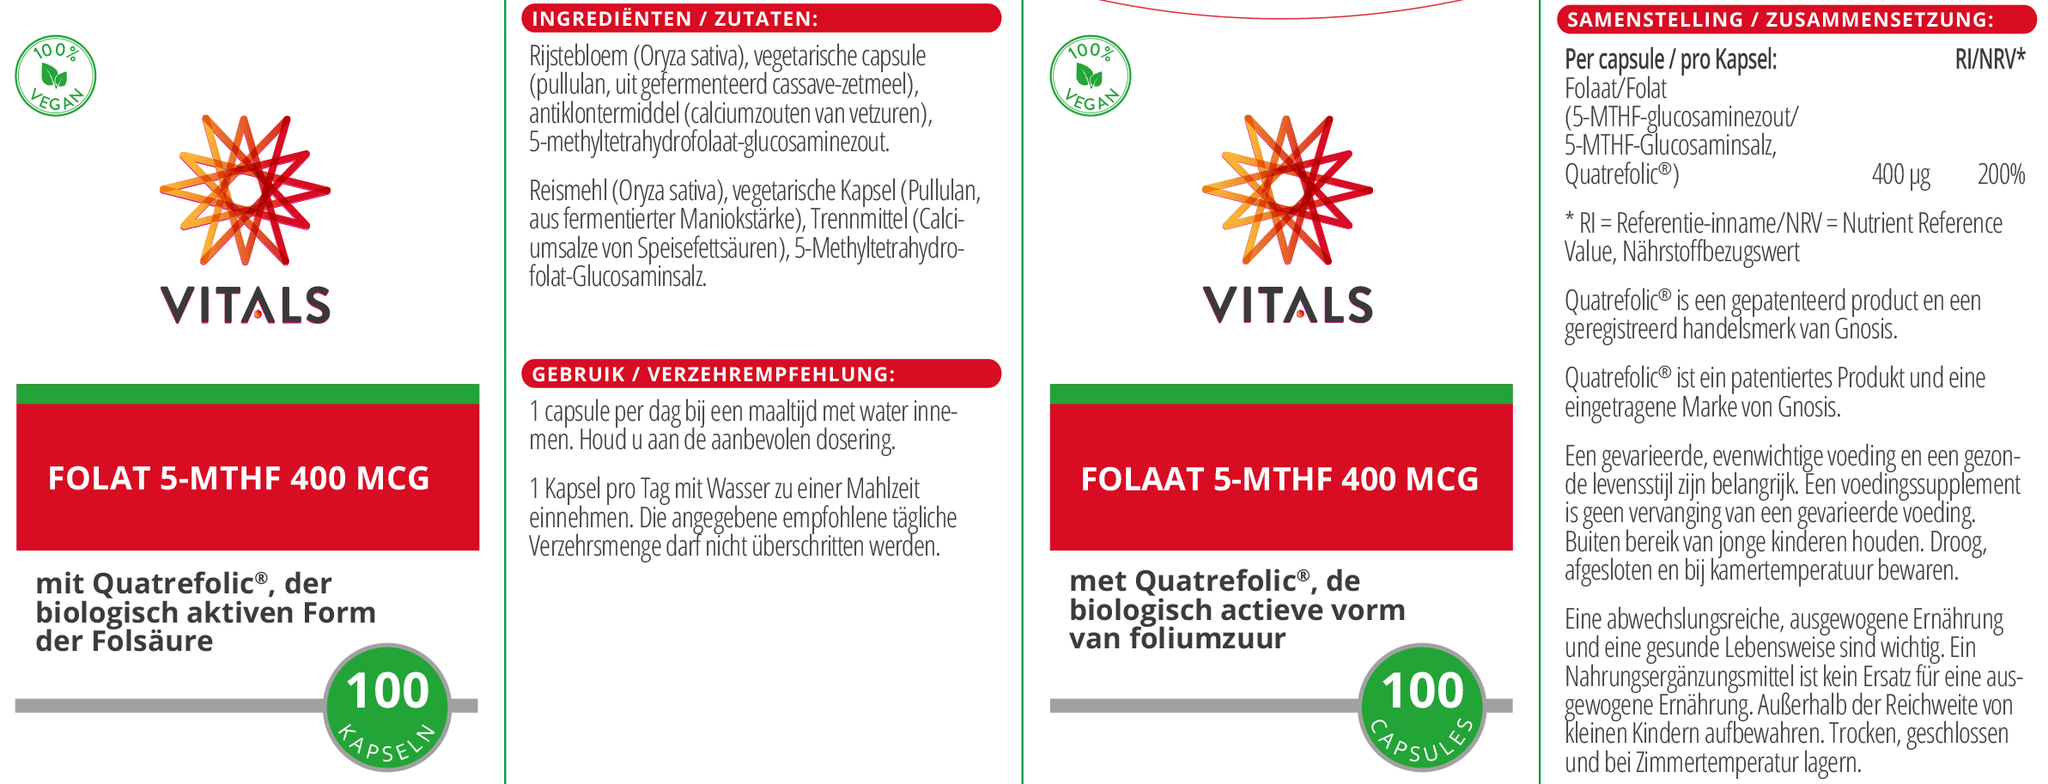 Folaat 5-MTHF 400 mcg - NowVitamins - Vitals - 8716717004072